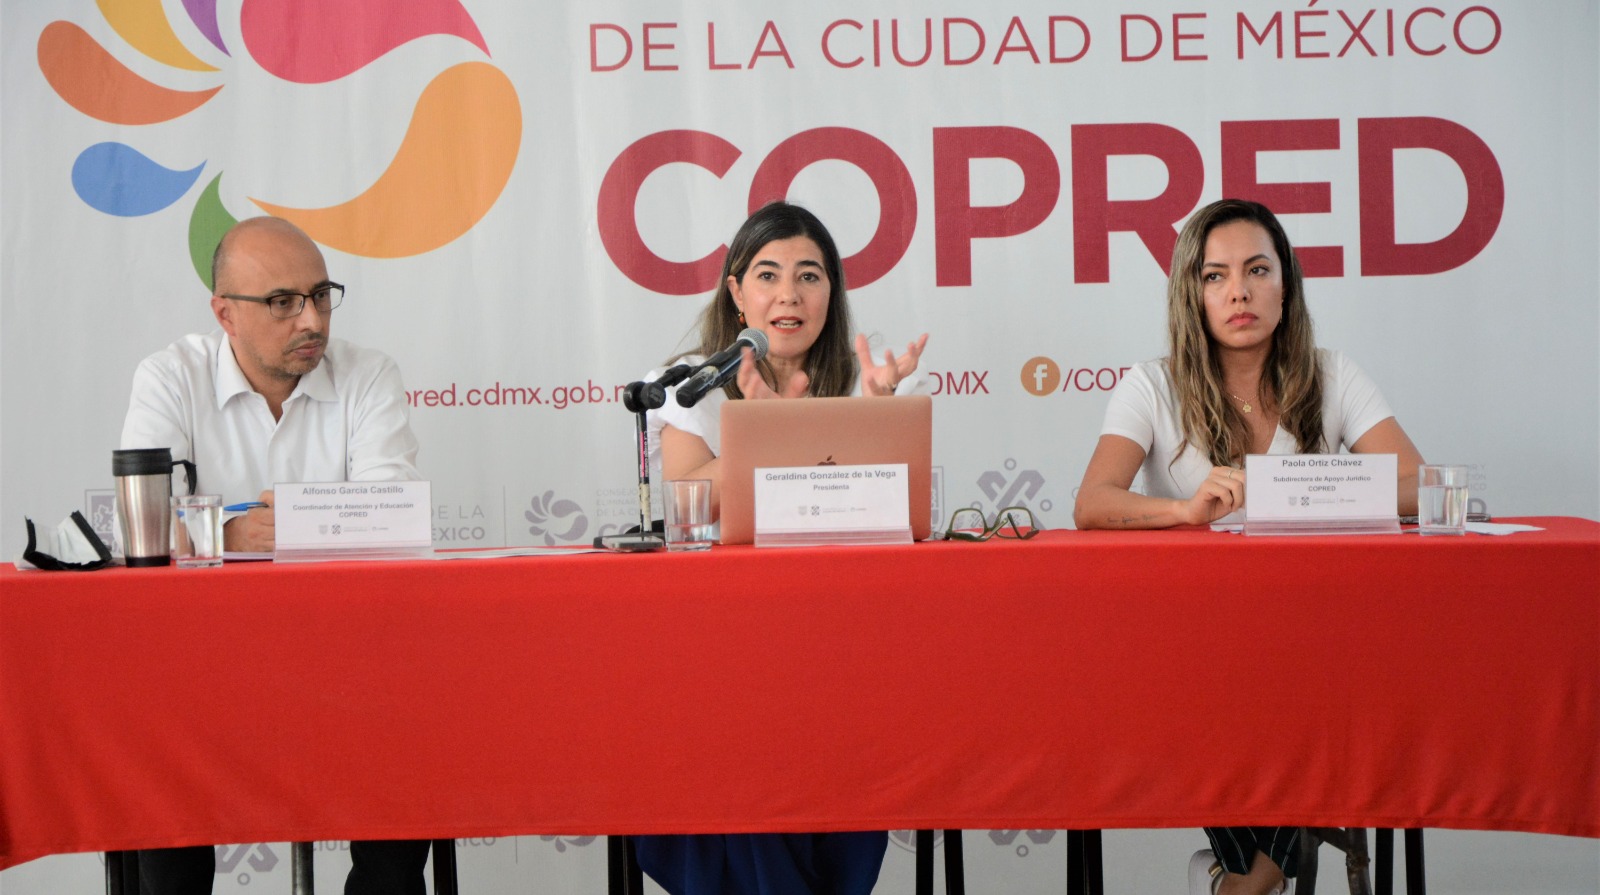 De izquierda a derecha: Alfonso García Castillo, Coordinador de Atención y Educación, Geraldina González, Presidenta y Paola Ortiz Chávez, Subdirectora de Apoyo Jurídico. de Copred